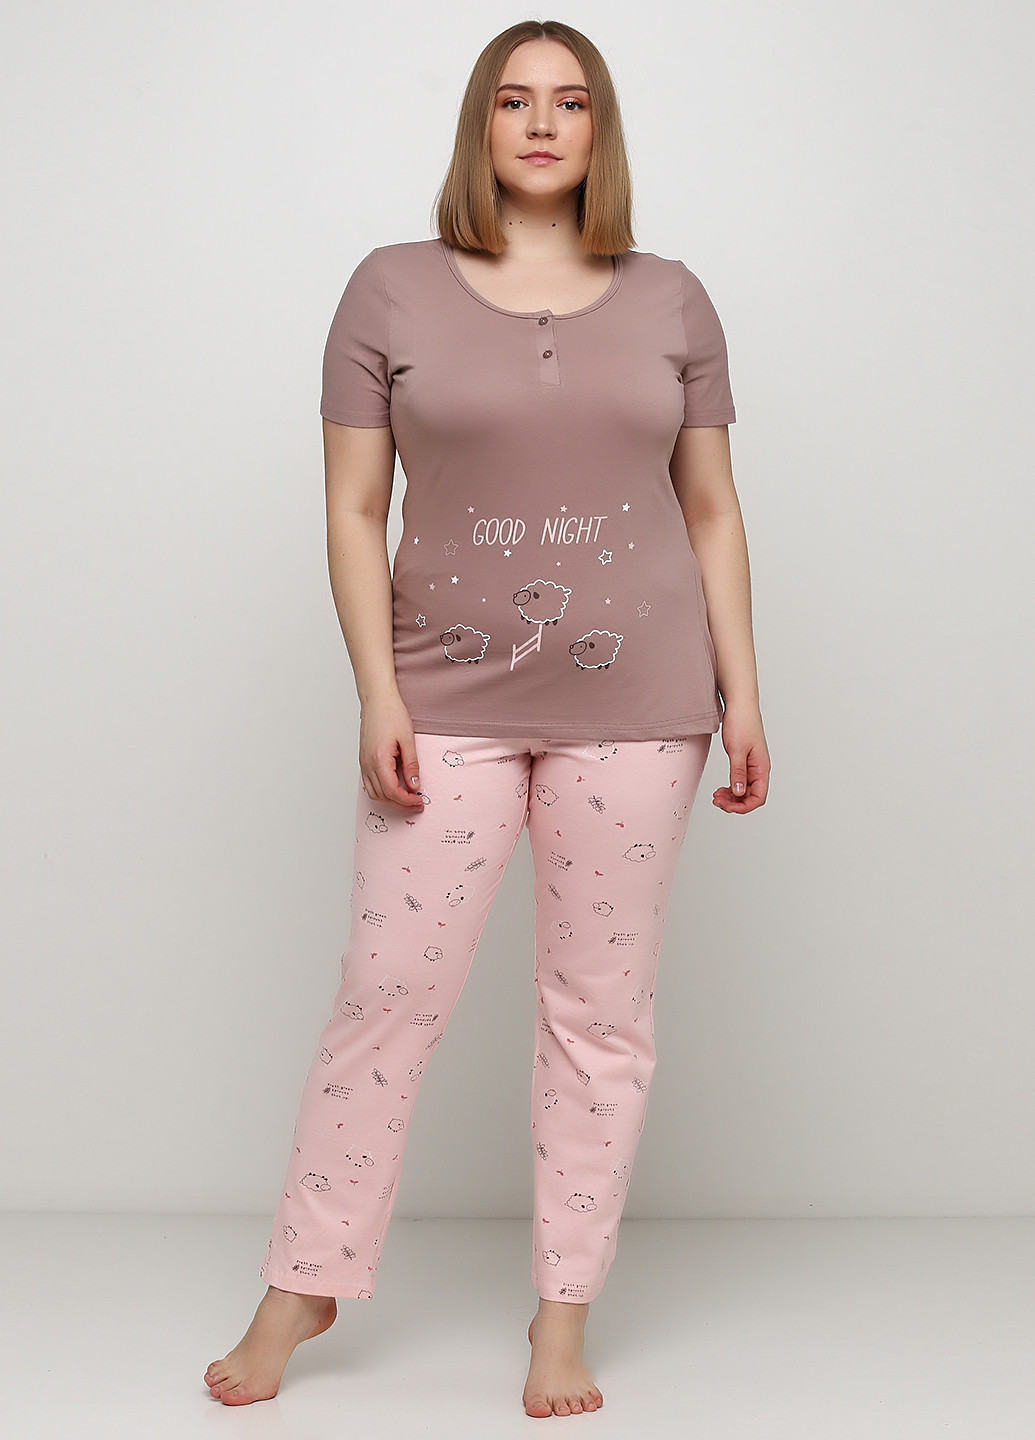 Комбинированная всесезон пижама (футболка, брюки) футболка + брюки Sexen